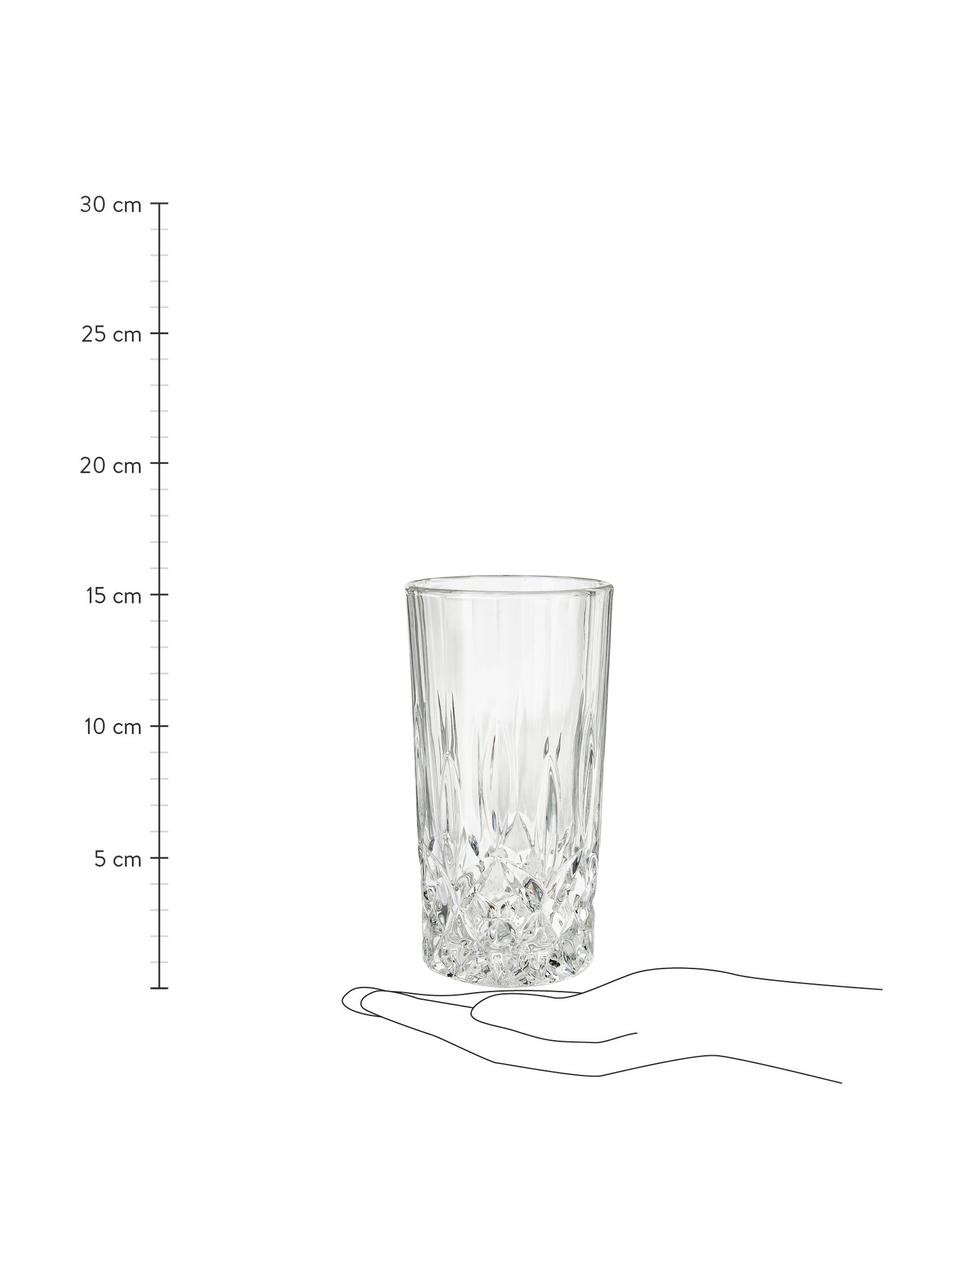 Longdrinkgläser George mit Kristallrelief, 4 Stück, Glas, Transparent, Ø 8 x H 15 cm, 380 ml